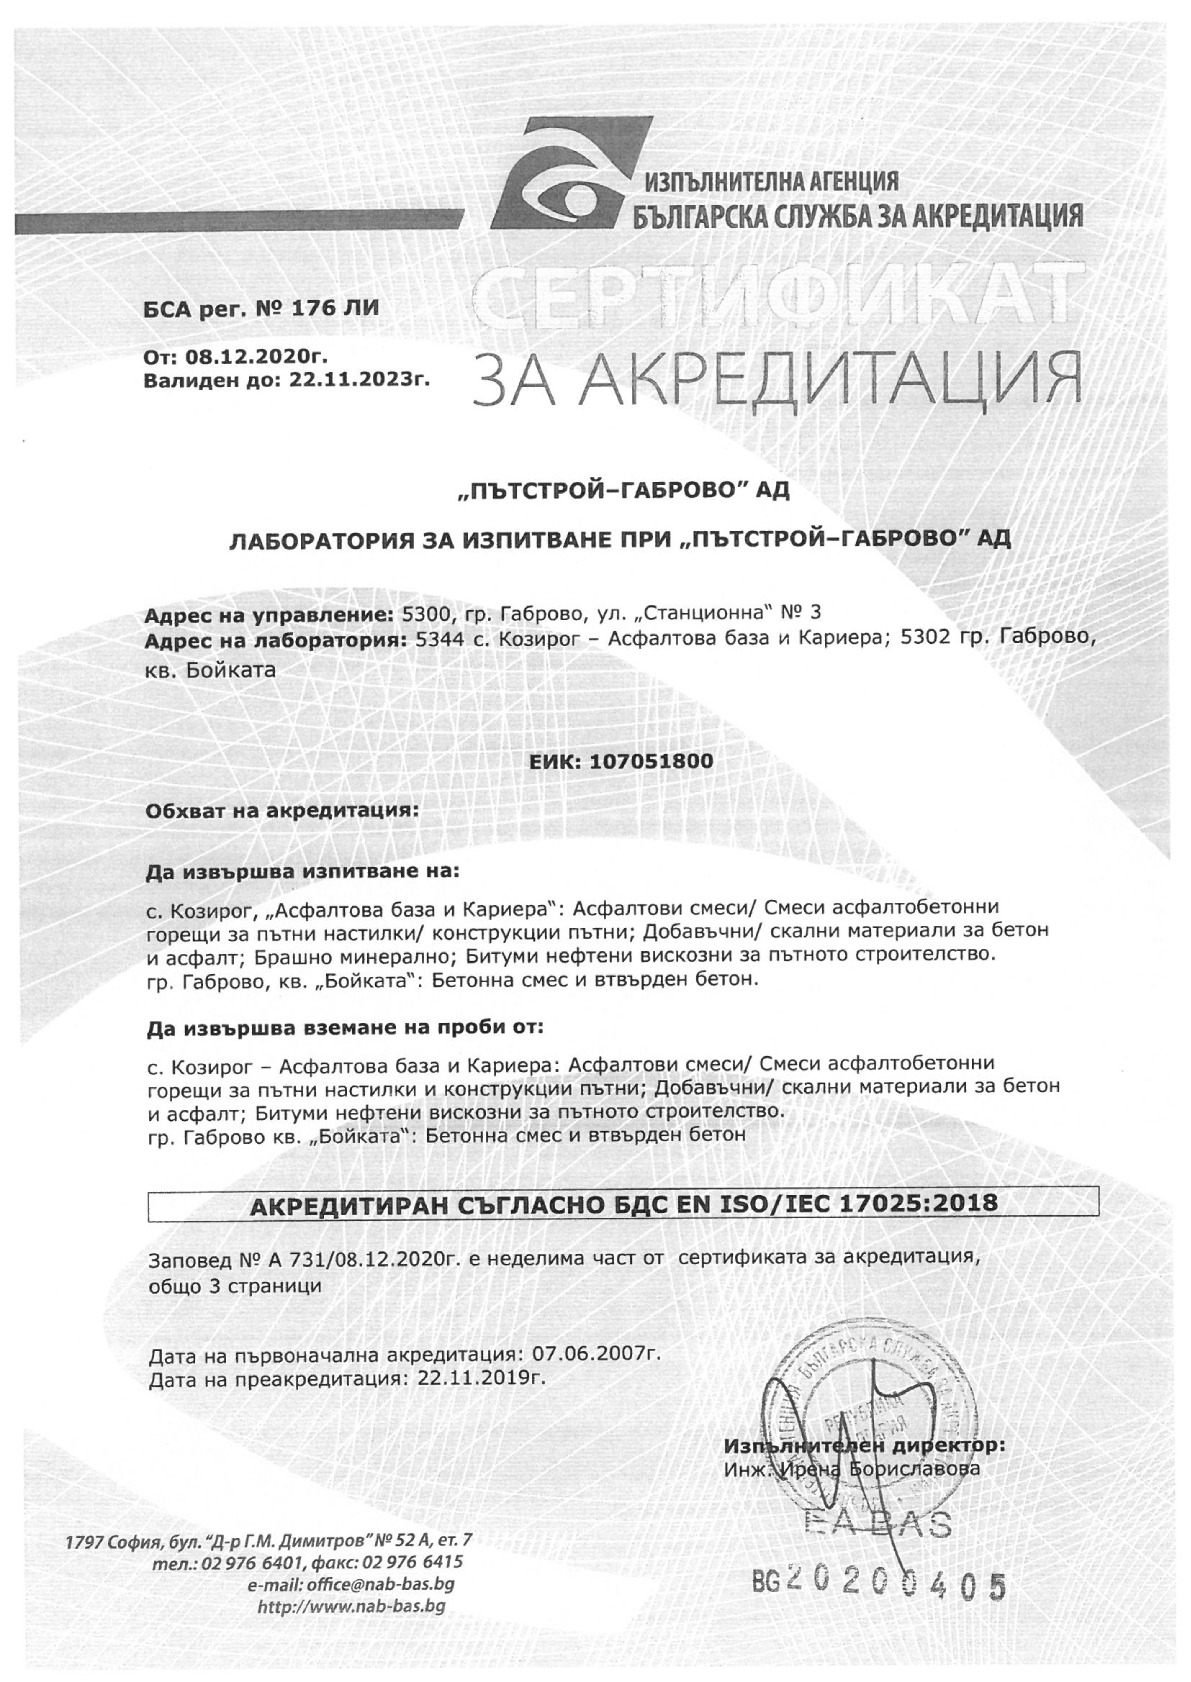 Сертификат за акредитация на лаборатория за изпитване при Пътстрой-Габрово АД